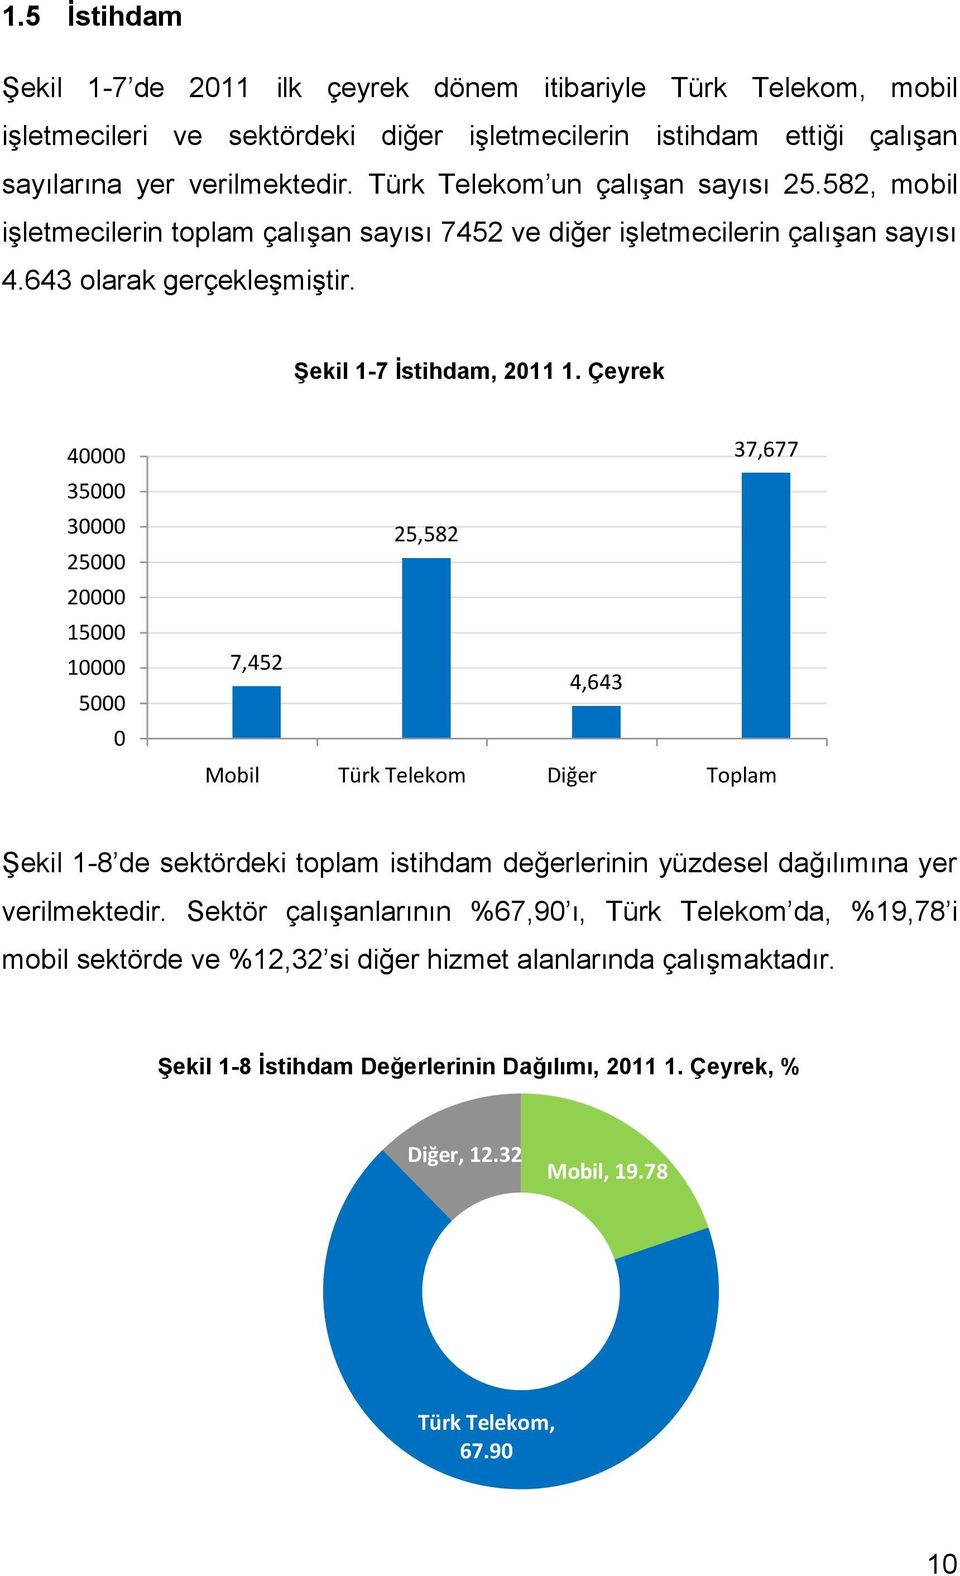 Çeyrek 40000 35000 30000 25000 20000 15000 10000 5000 0 37,677 25,582 7,452 4,643 Mobil Türk Telekom Diğer Toplam Şekil 1-8 de sektördeki toplam istihdam değerlerinin yüzdesel dağılımına yer